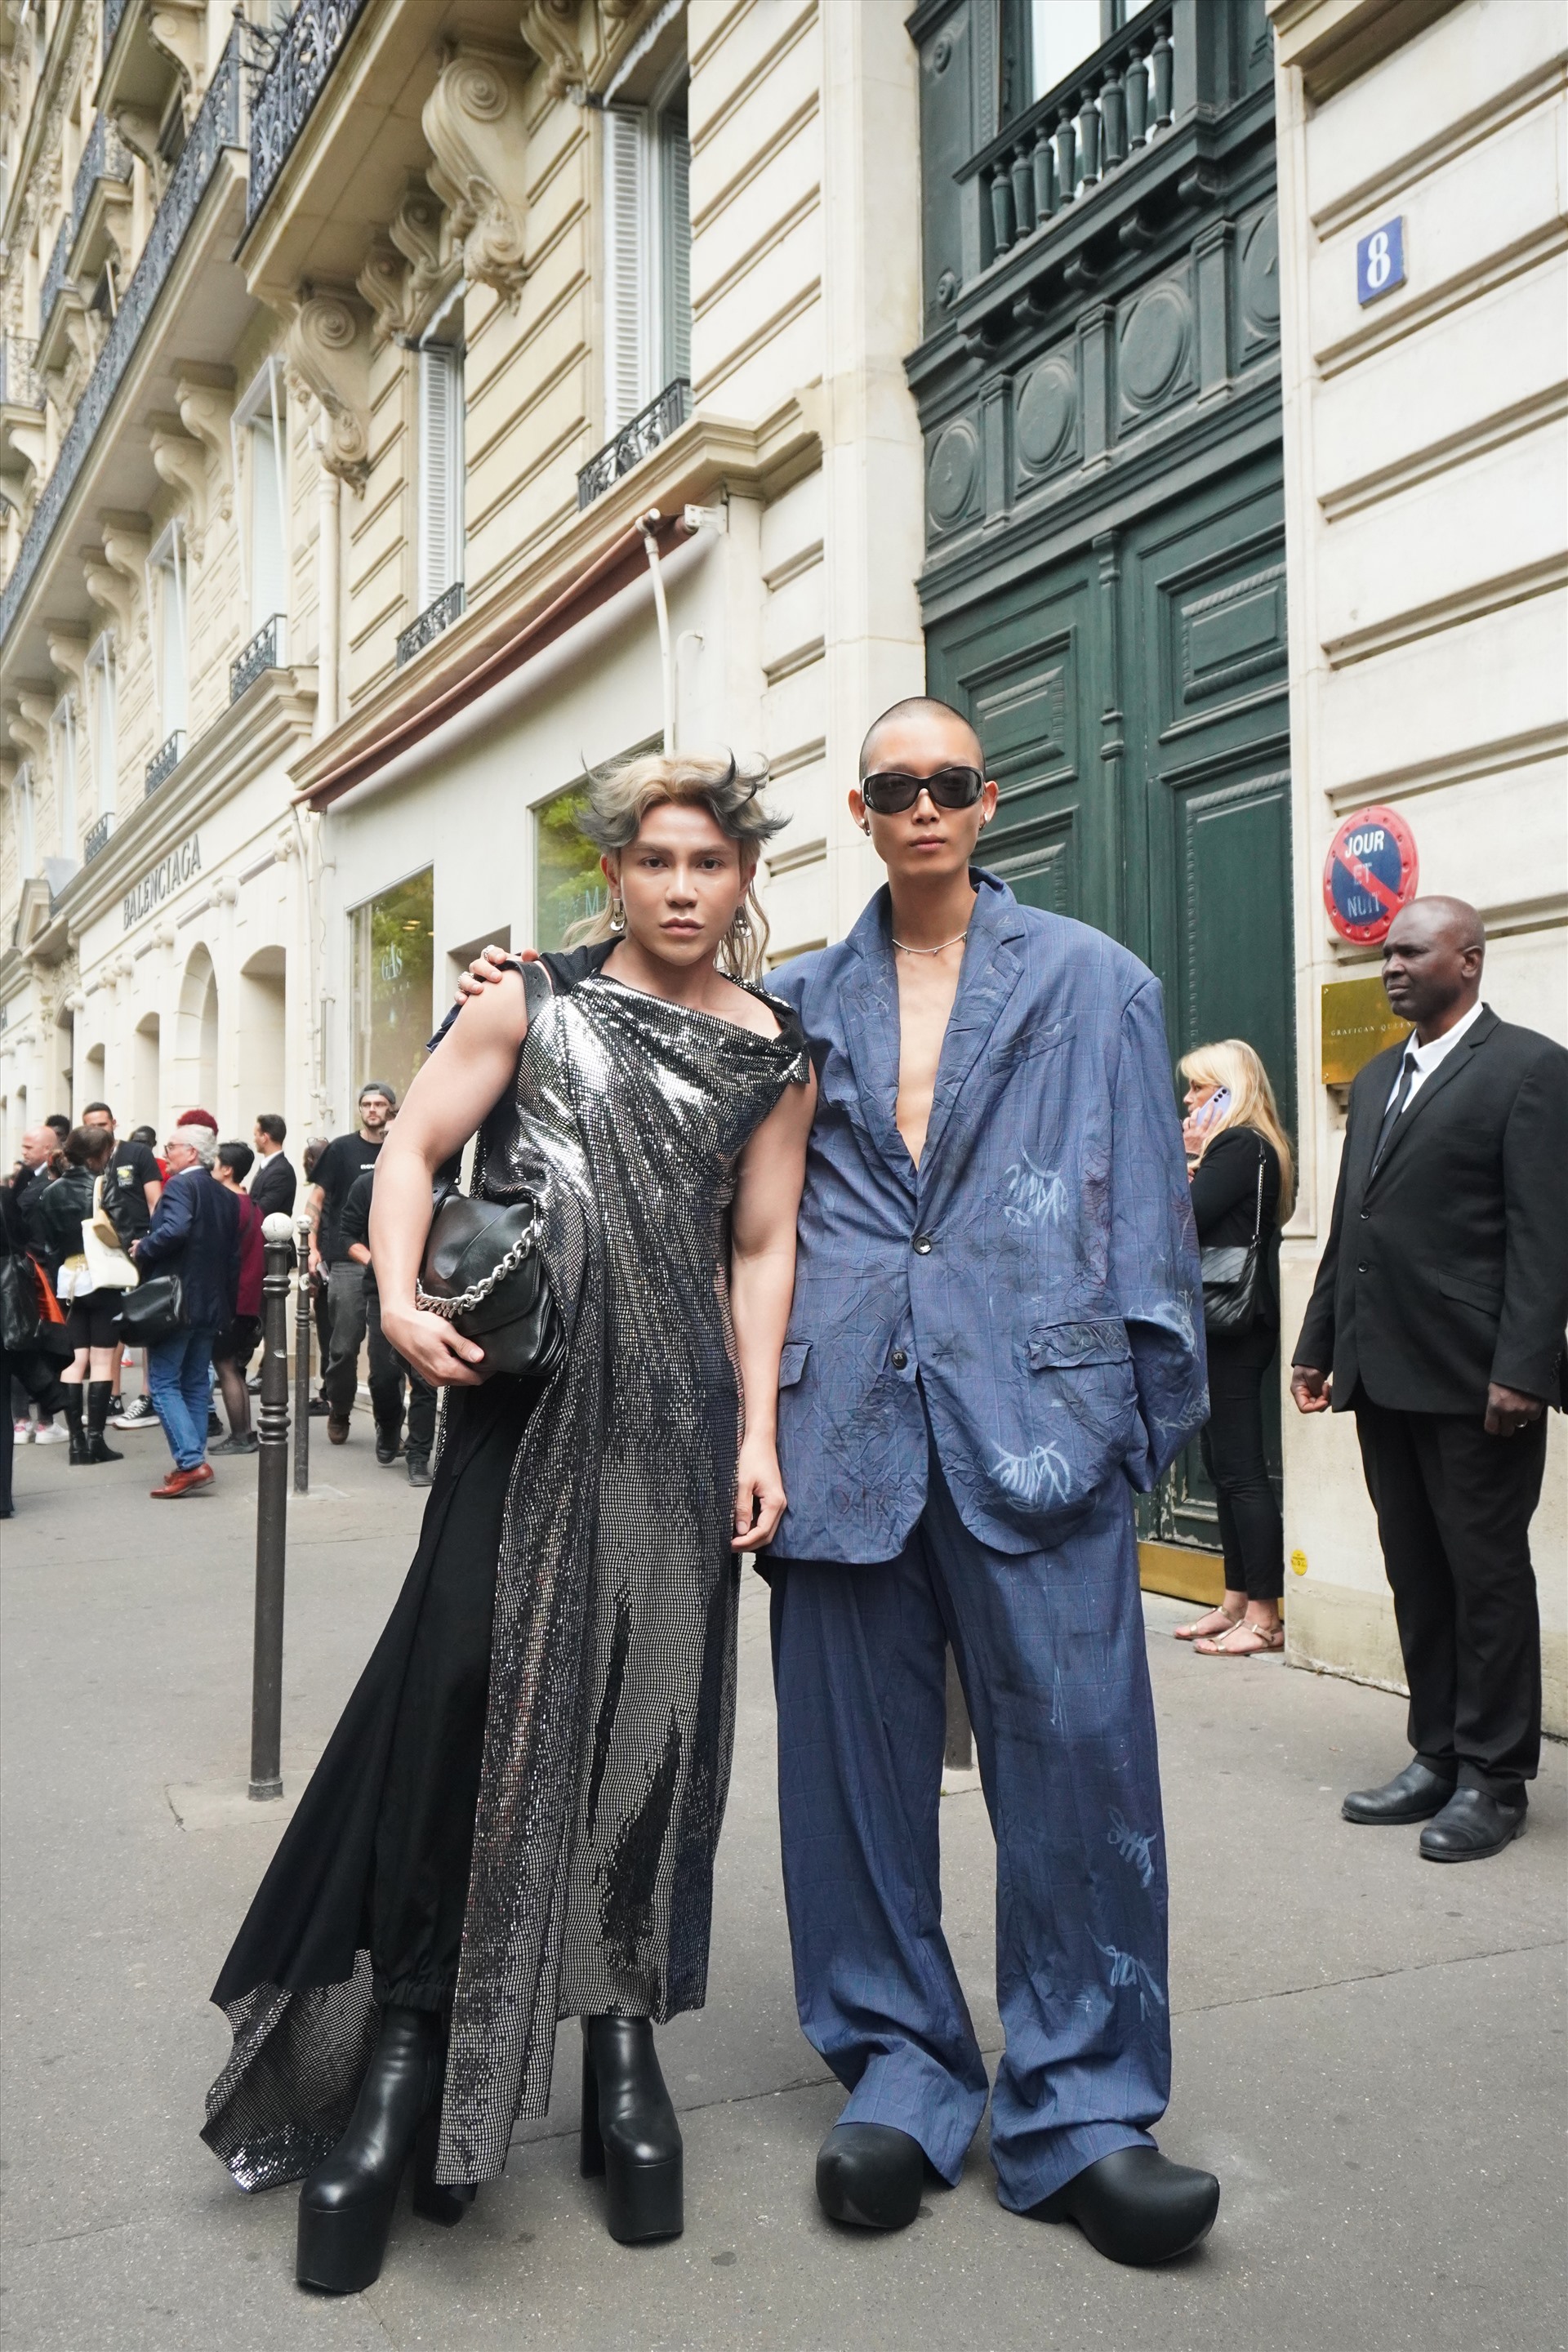 Đến với Paris Fashion Week lần này cũng là dịp để Call me Duy thể hiện được phong cách thời trang cá nhân cũng như đặt những viên gạch đầu tiên trên con đường trở thành một fashion influencer chuyên nghiệp. 